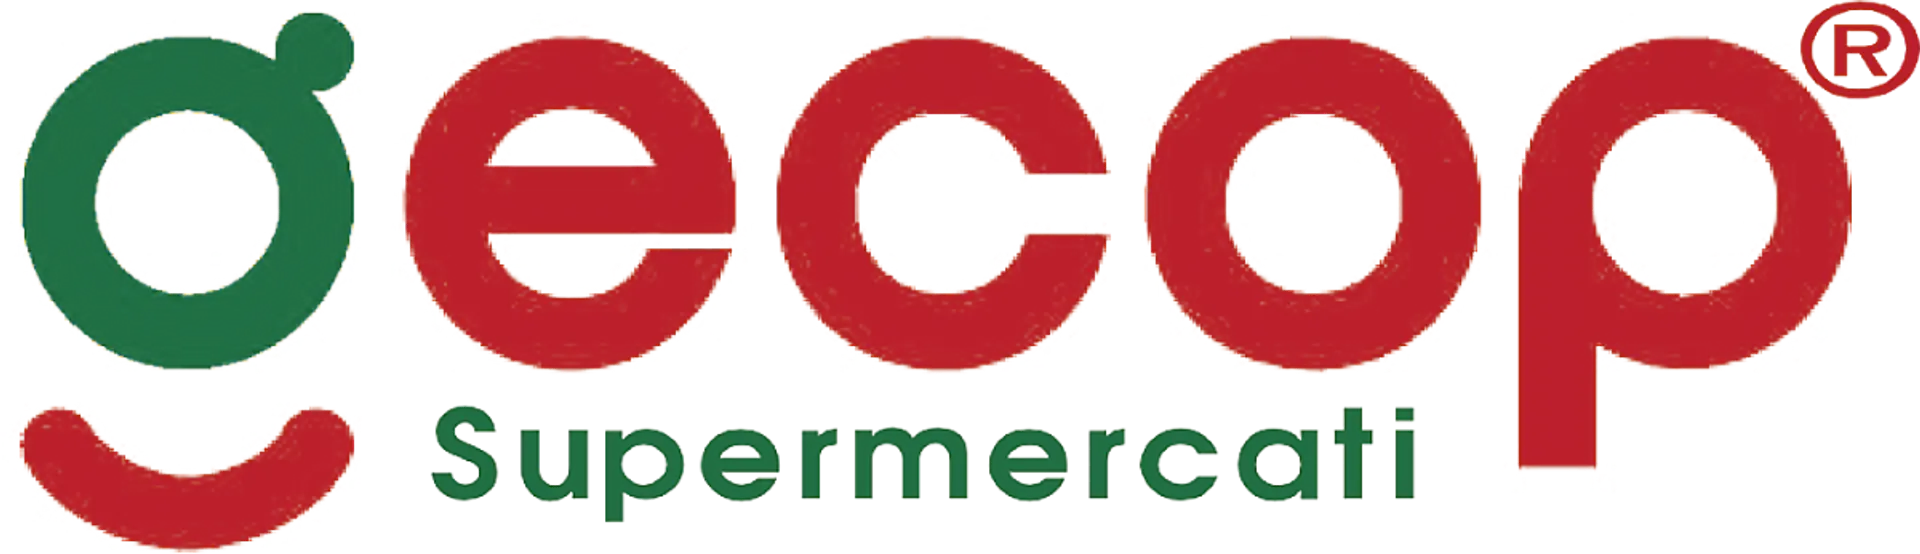 GECOP logo del volantino attuale